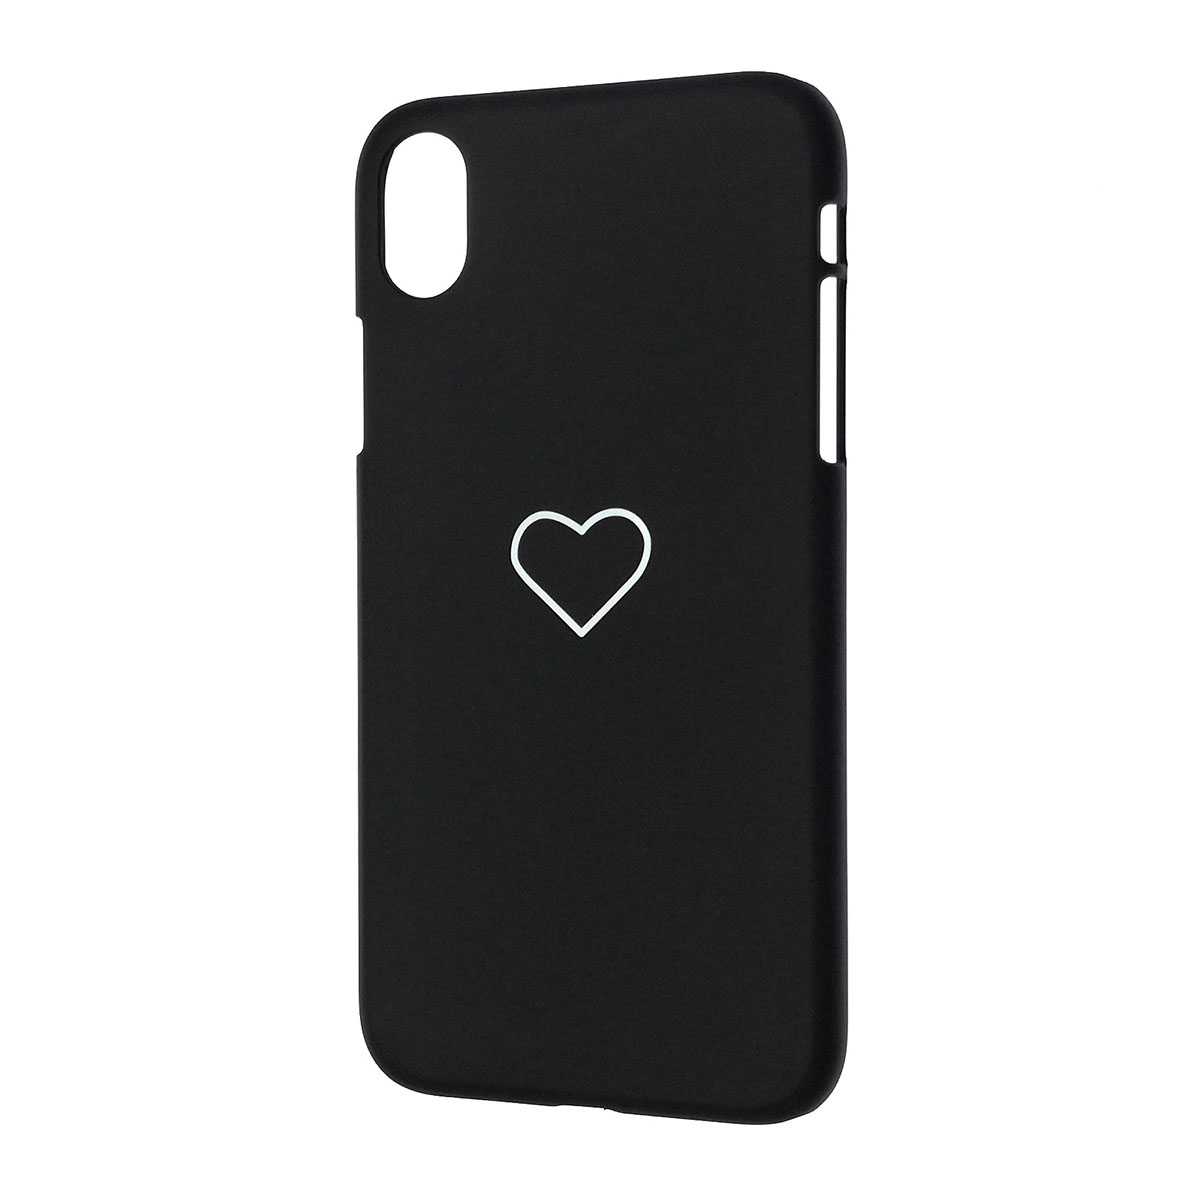 Чехол накладка для APPLE iPhone XR, пластик, матовый, рисунок Сердце, цвет черный.